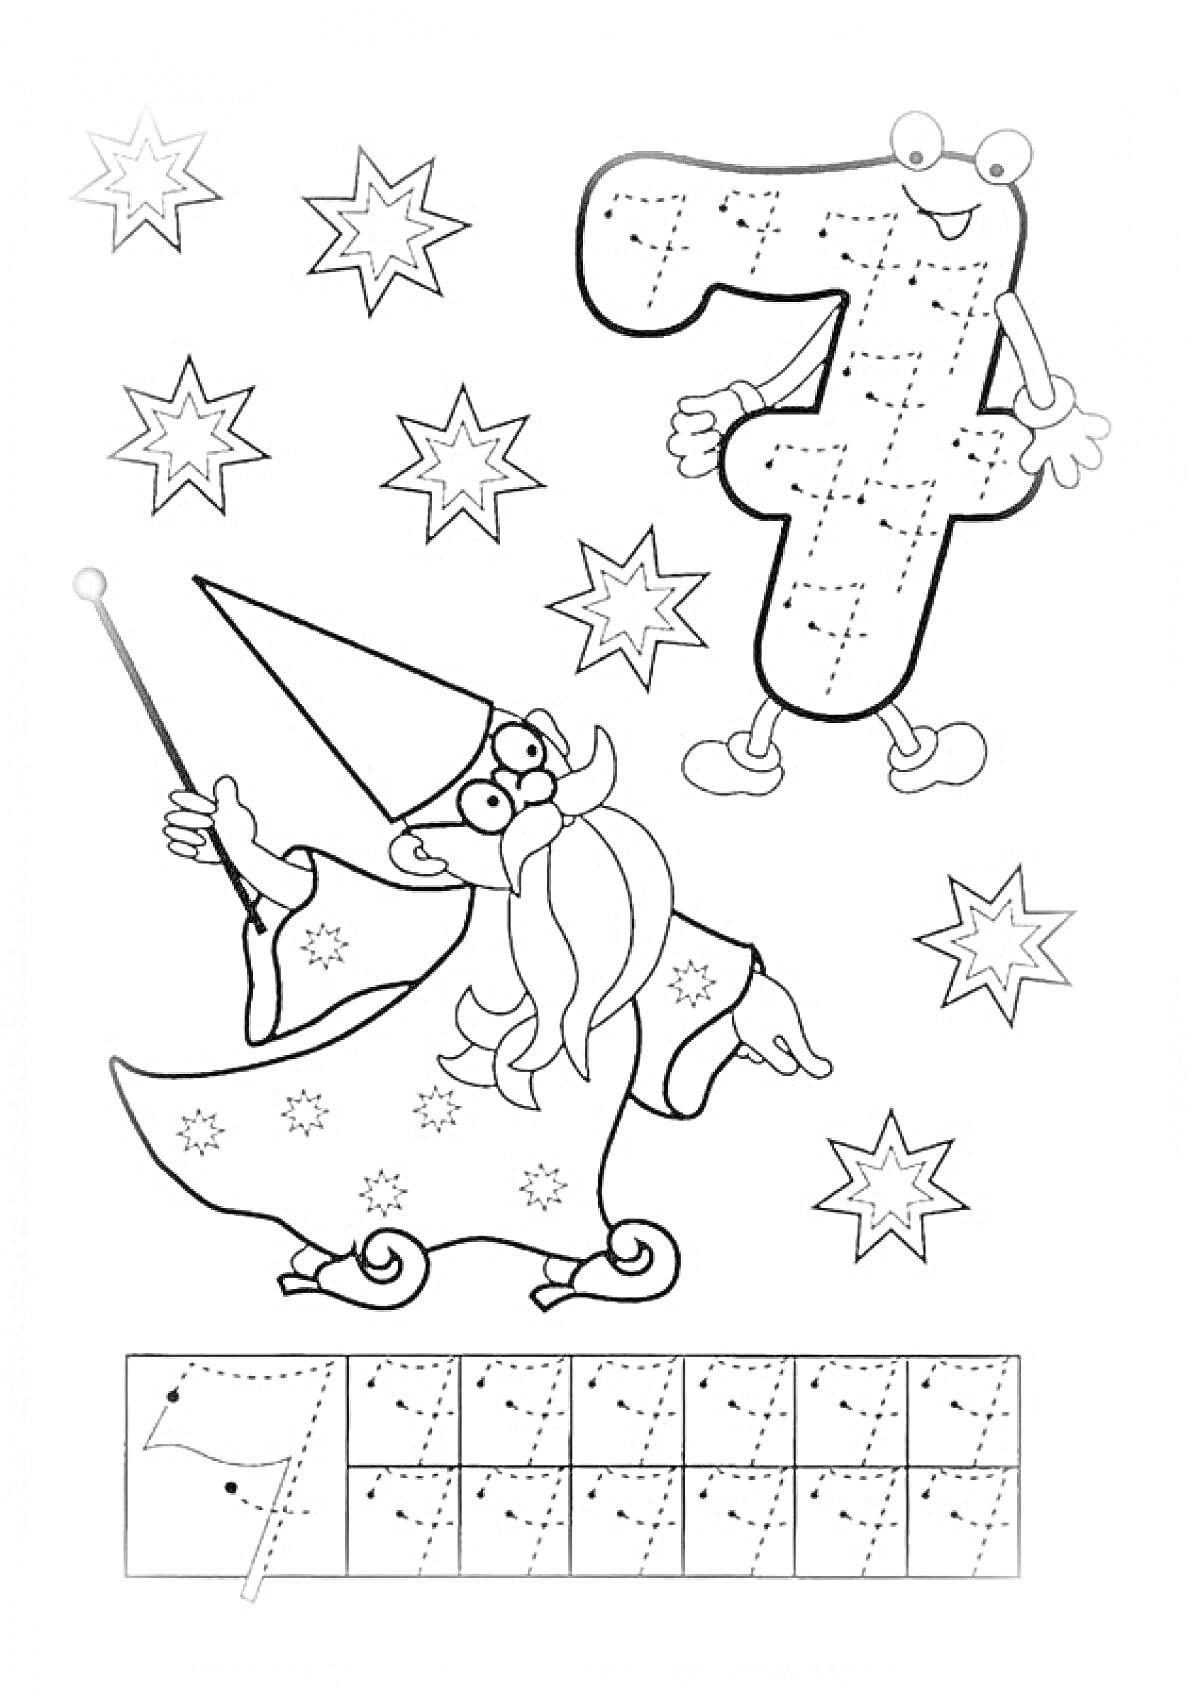 Волшебник и цифра 7 с изображением звезд